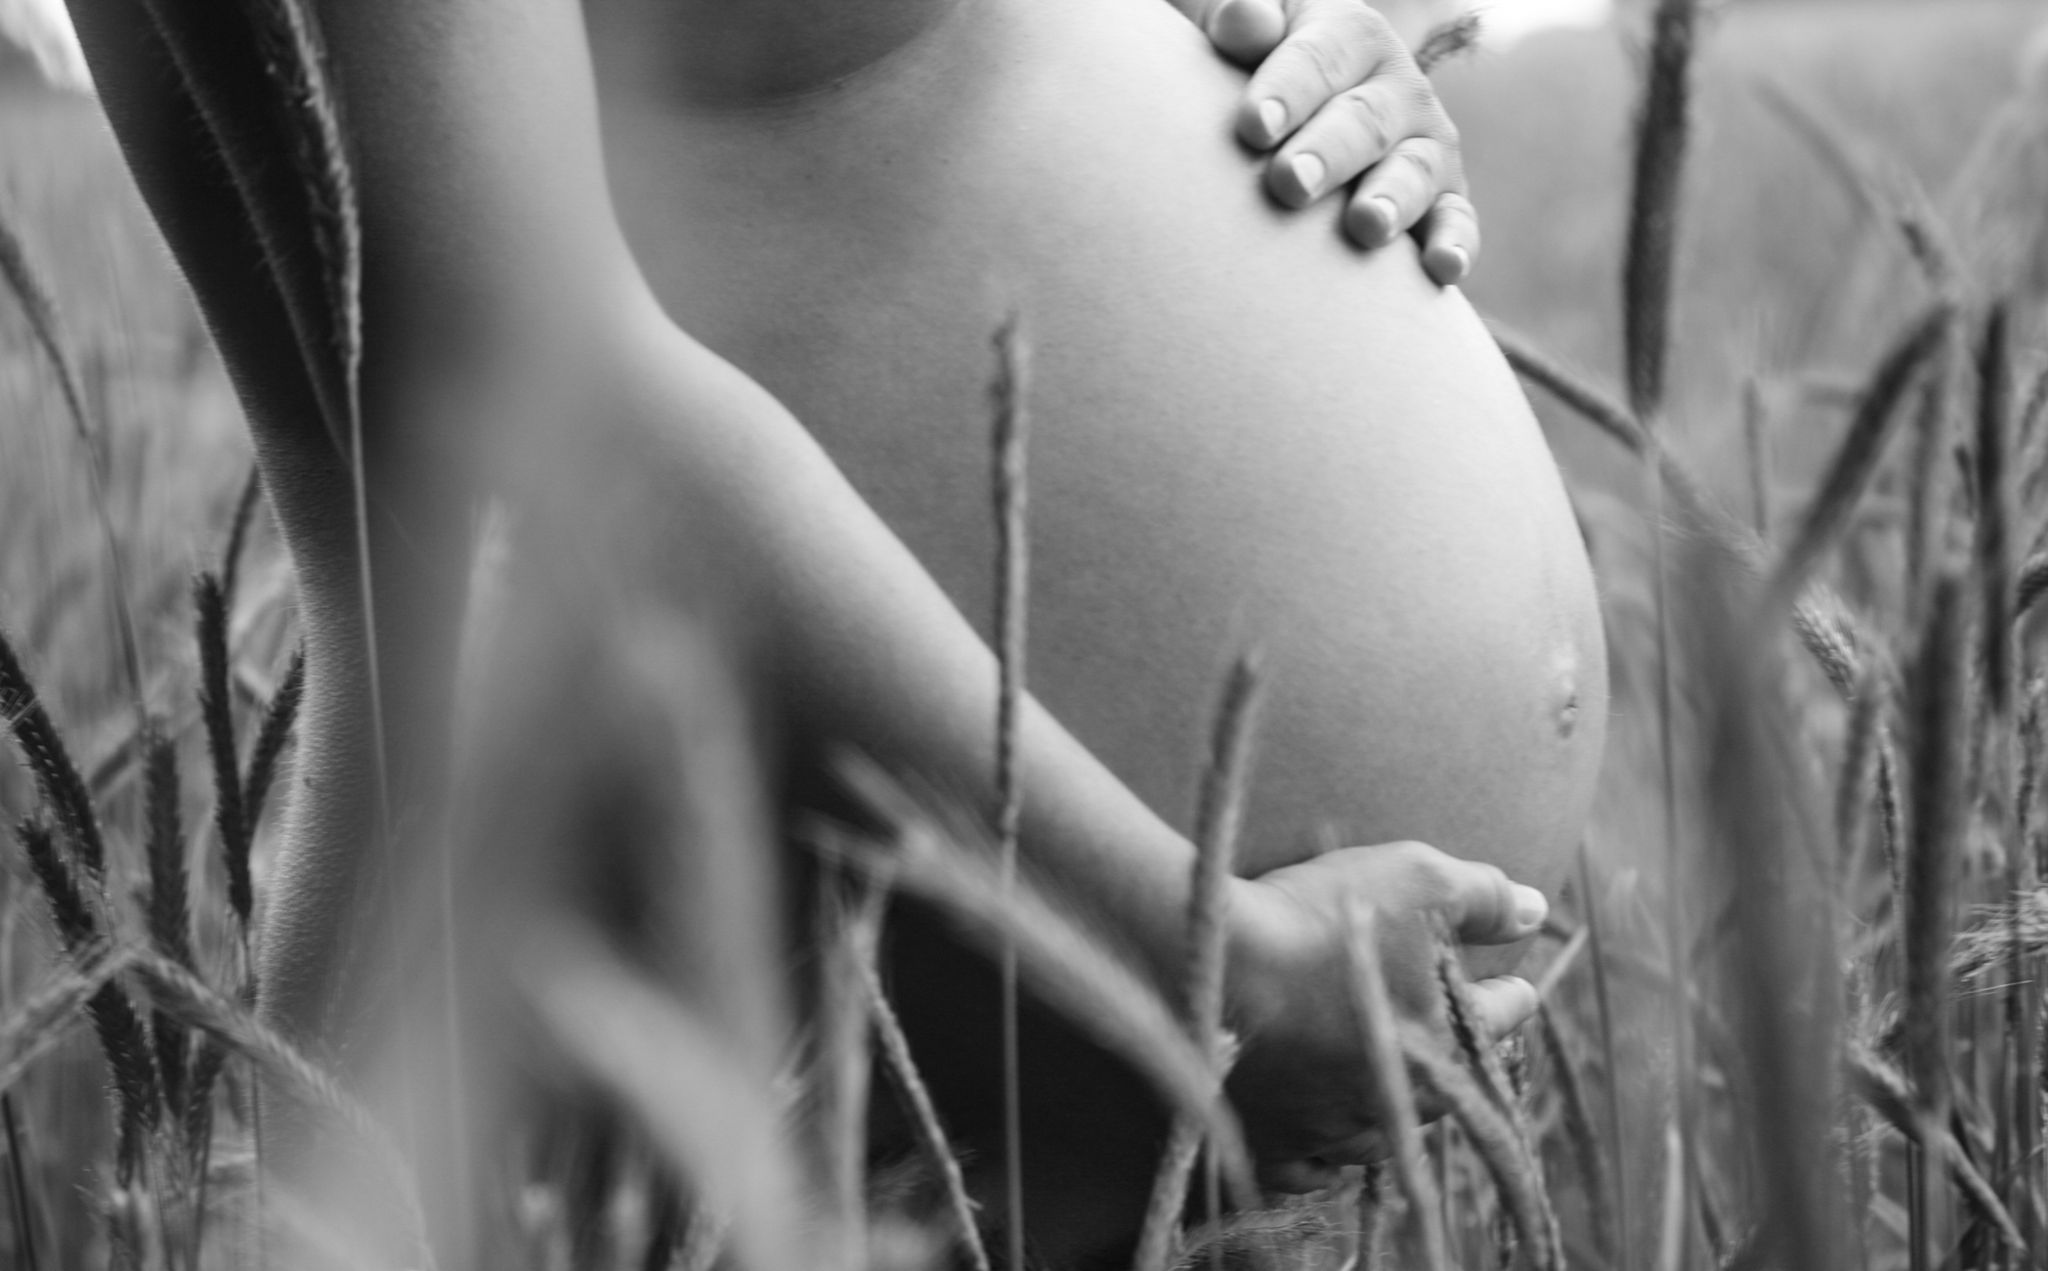 30 Week Maternity Shoot  Schwangerschaftsbilder, Schwangerschafts  bauchfotos, Schwangerschaft fotografie